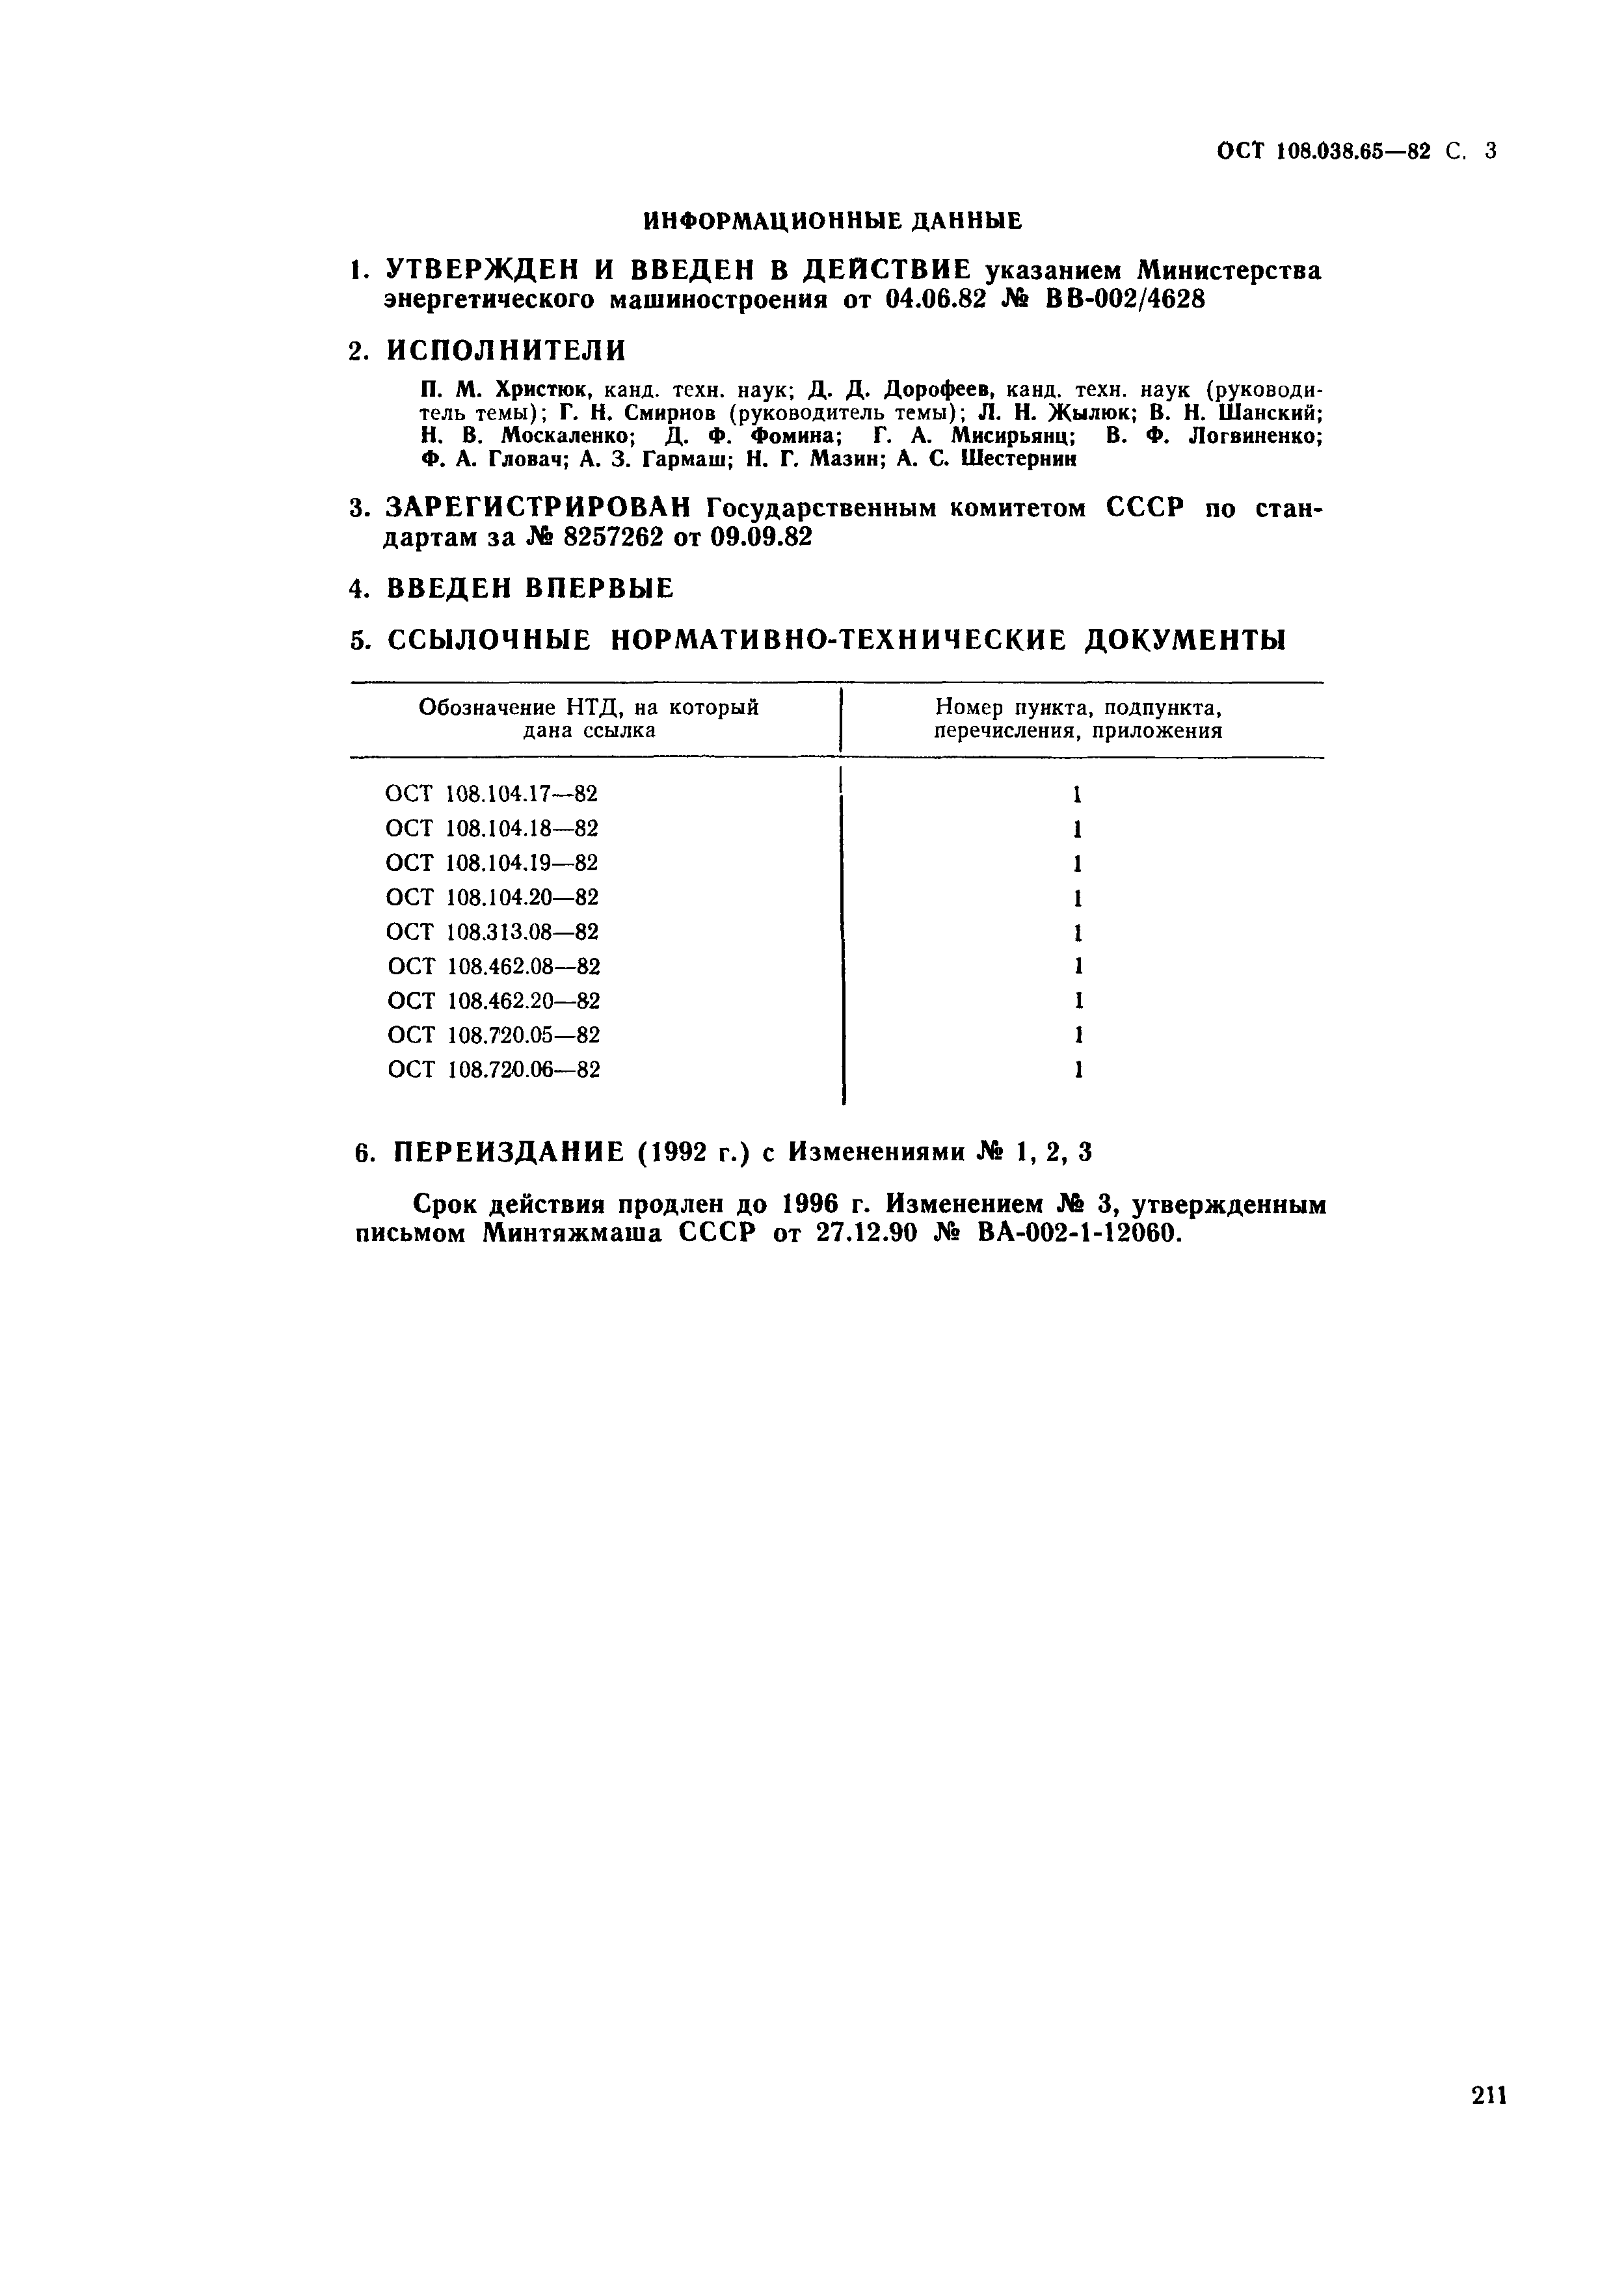 ОСТ 108.038.65-82